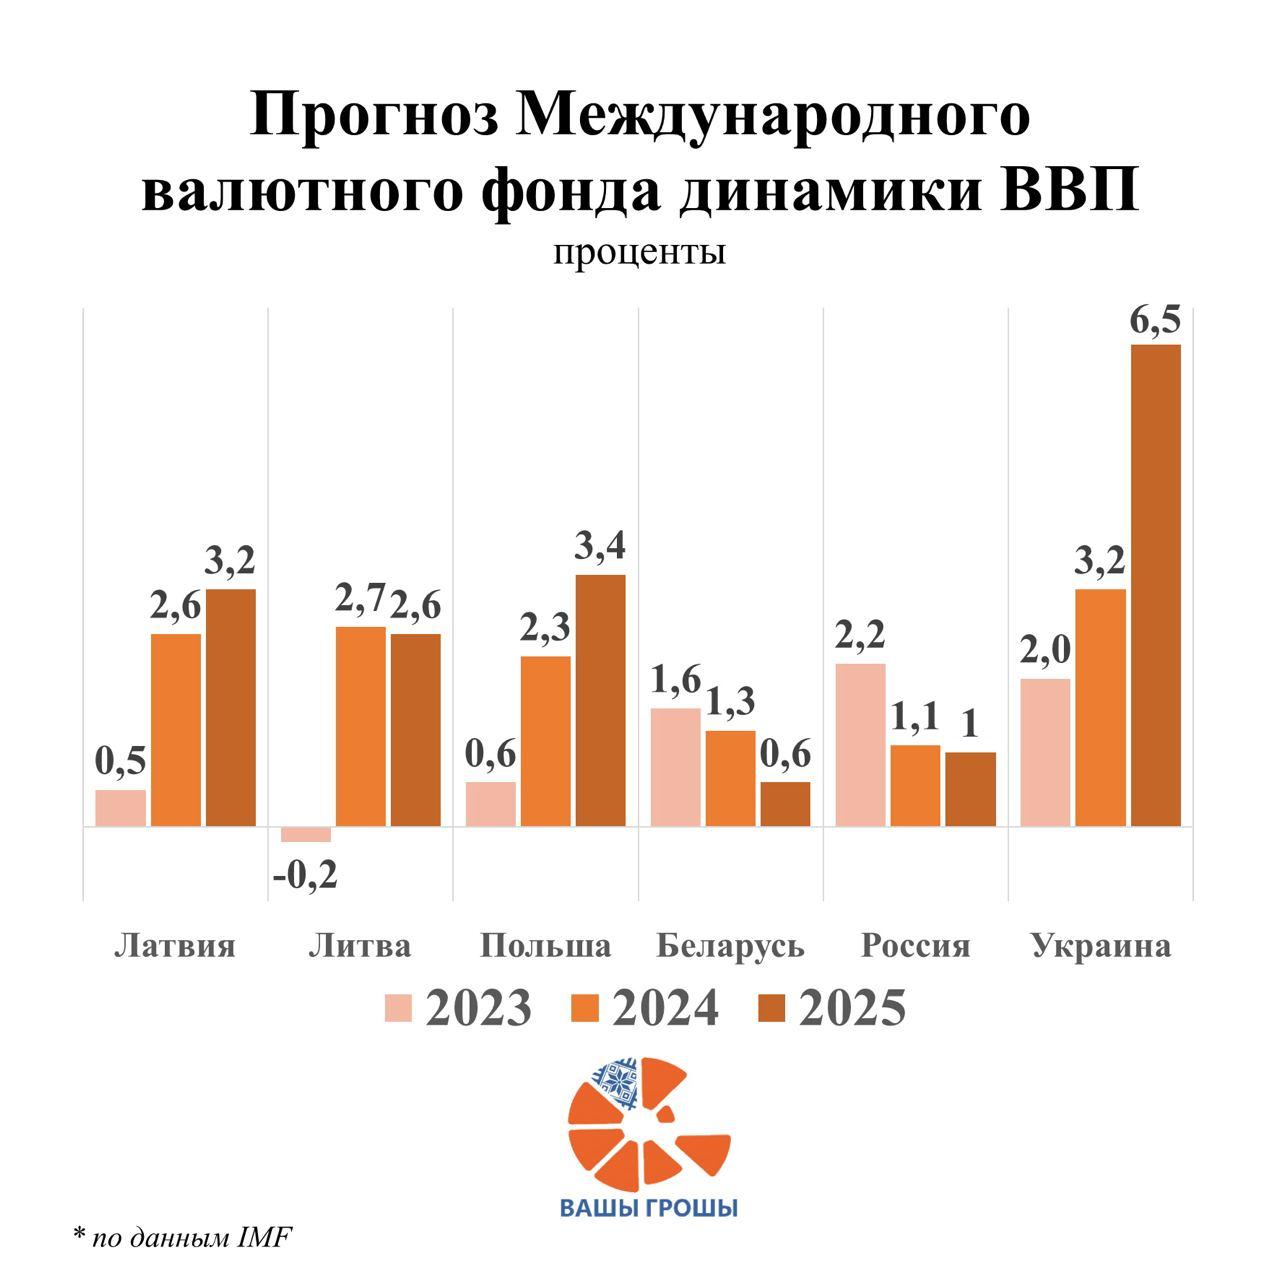 Международный валютный фонд прогнозируют в экономике Беларуси стагнацию